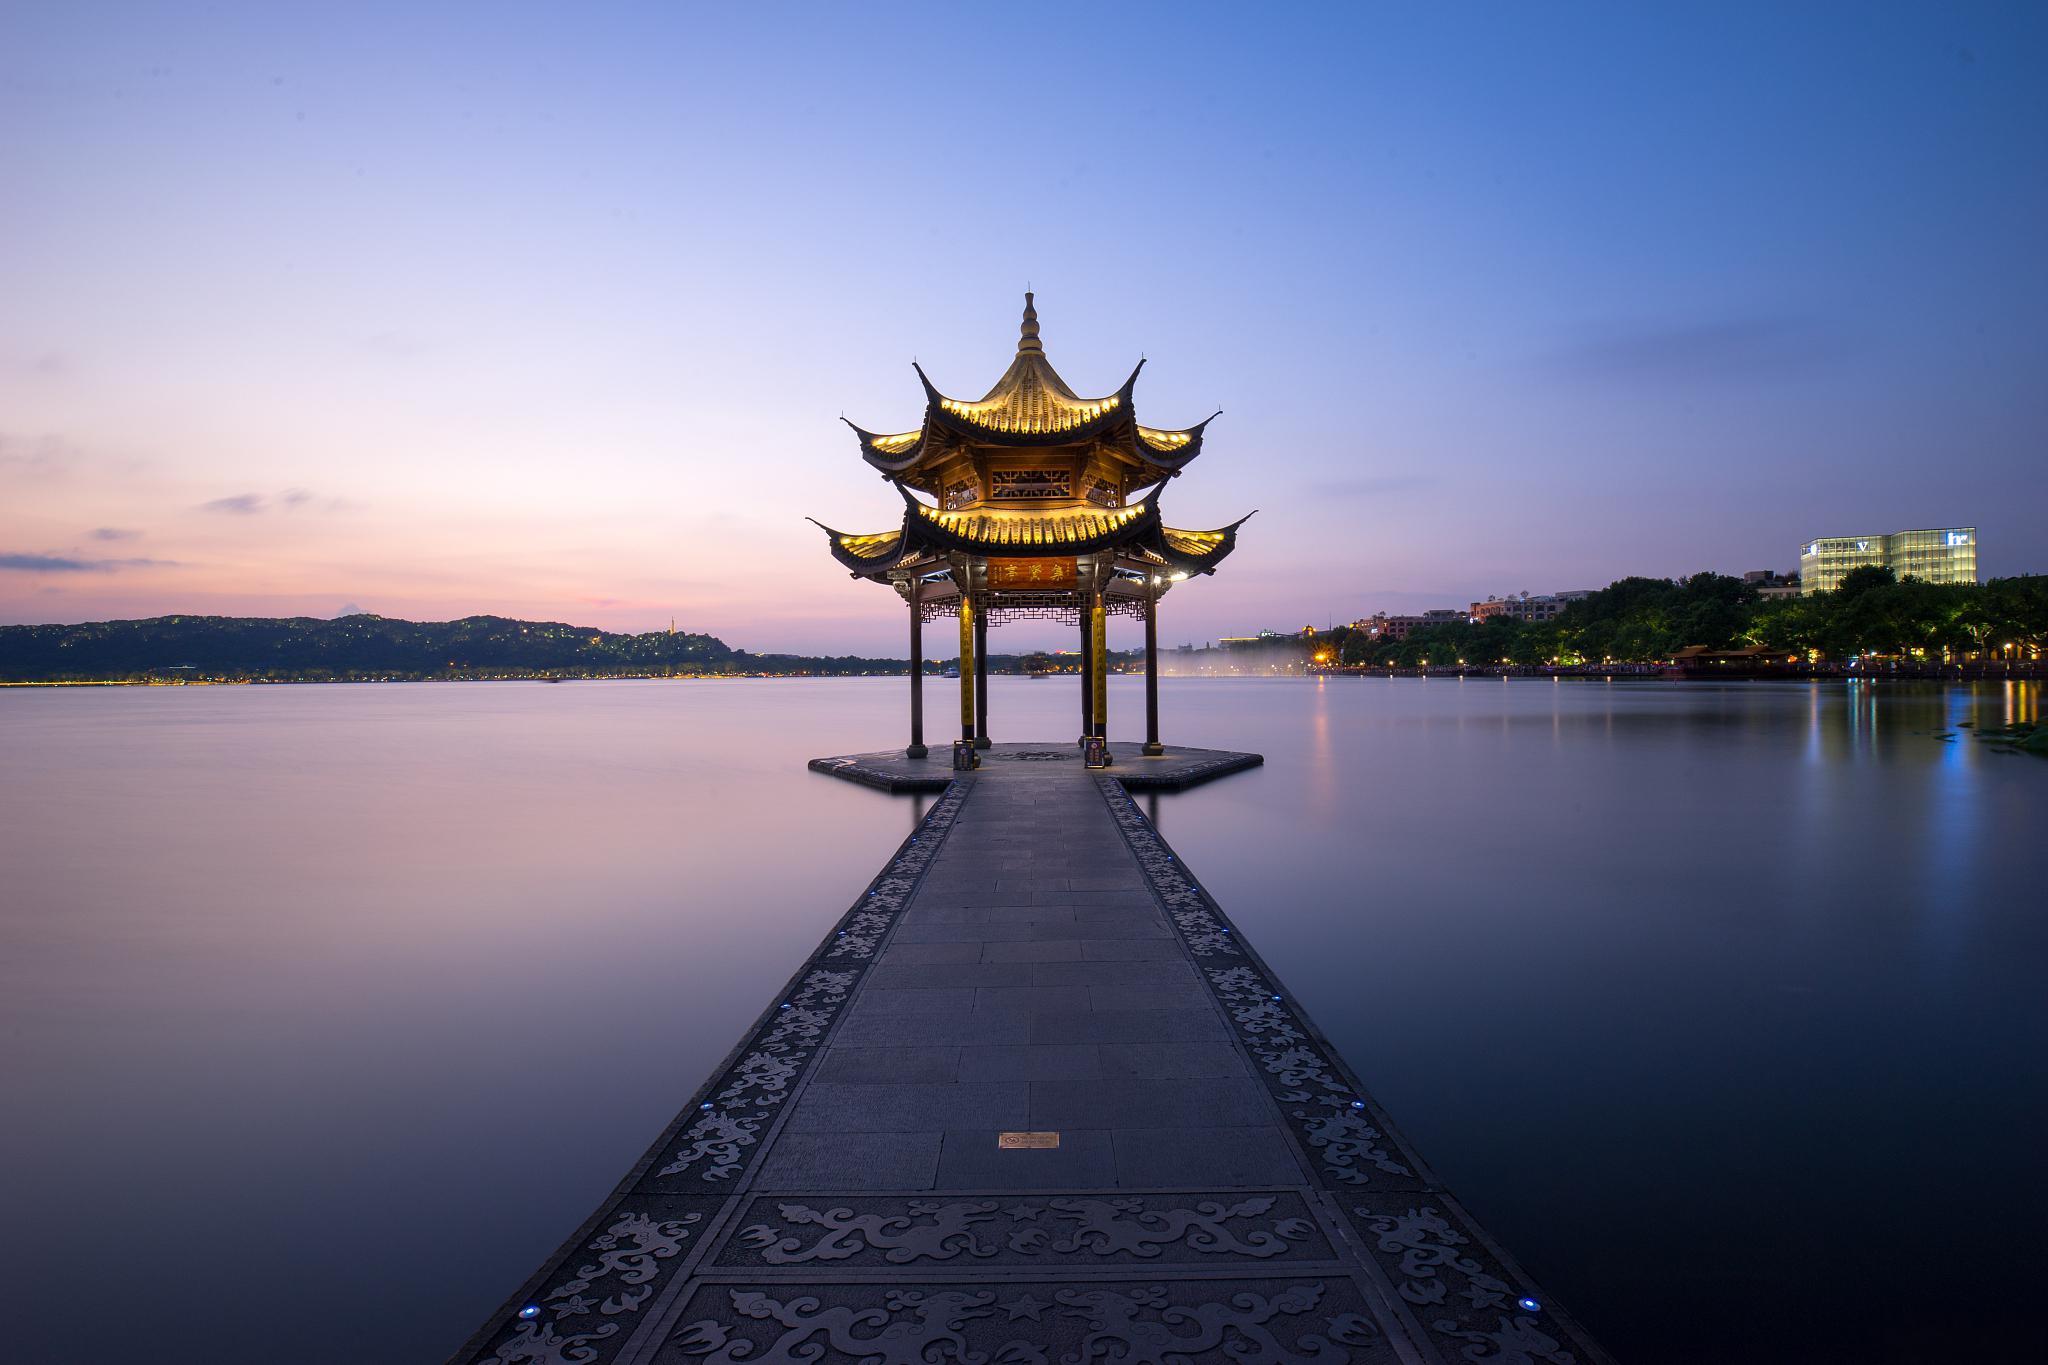 西湖风景区位于中国浙江省杭州市,是国内旅游必去的十大地方之一